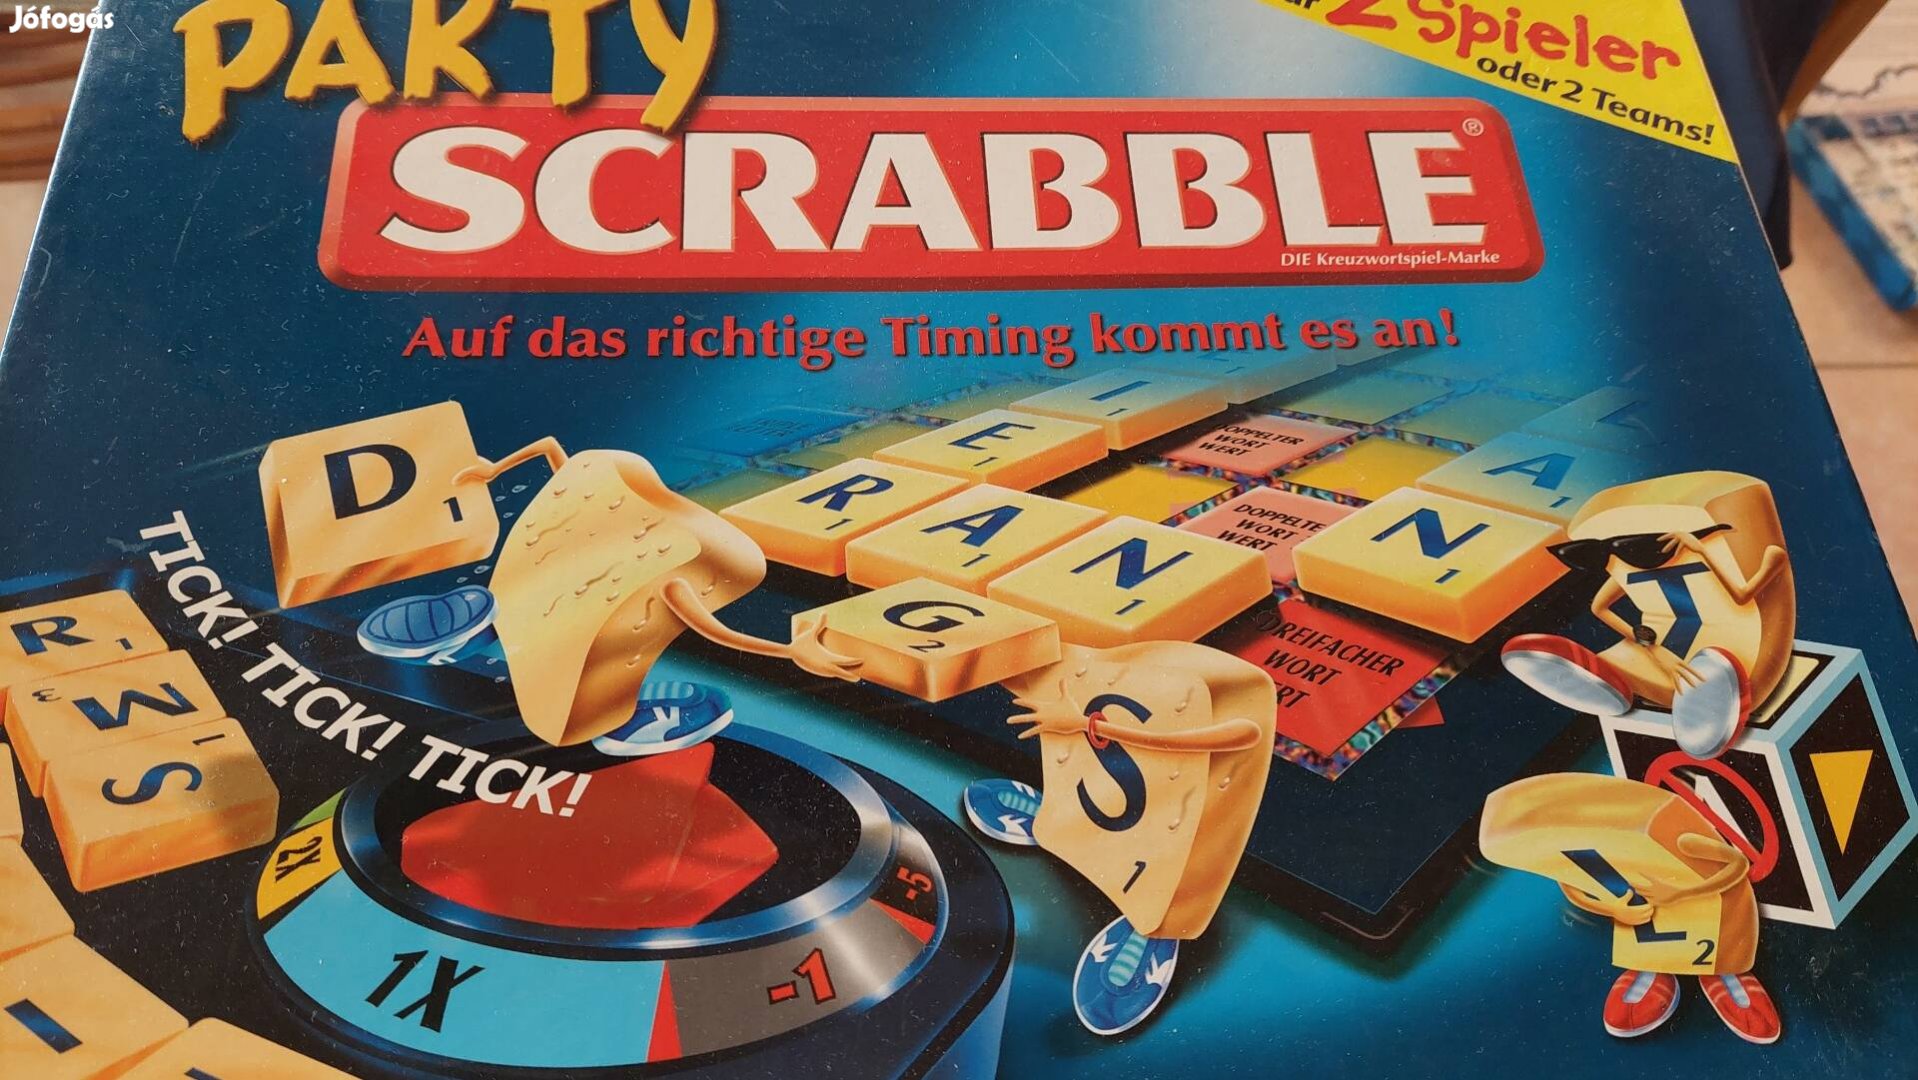 Party scrabble német nyelvű